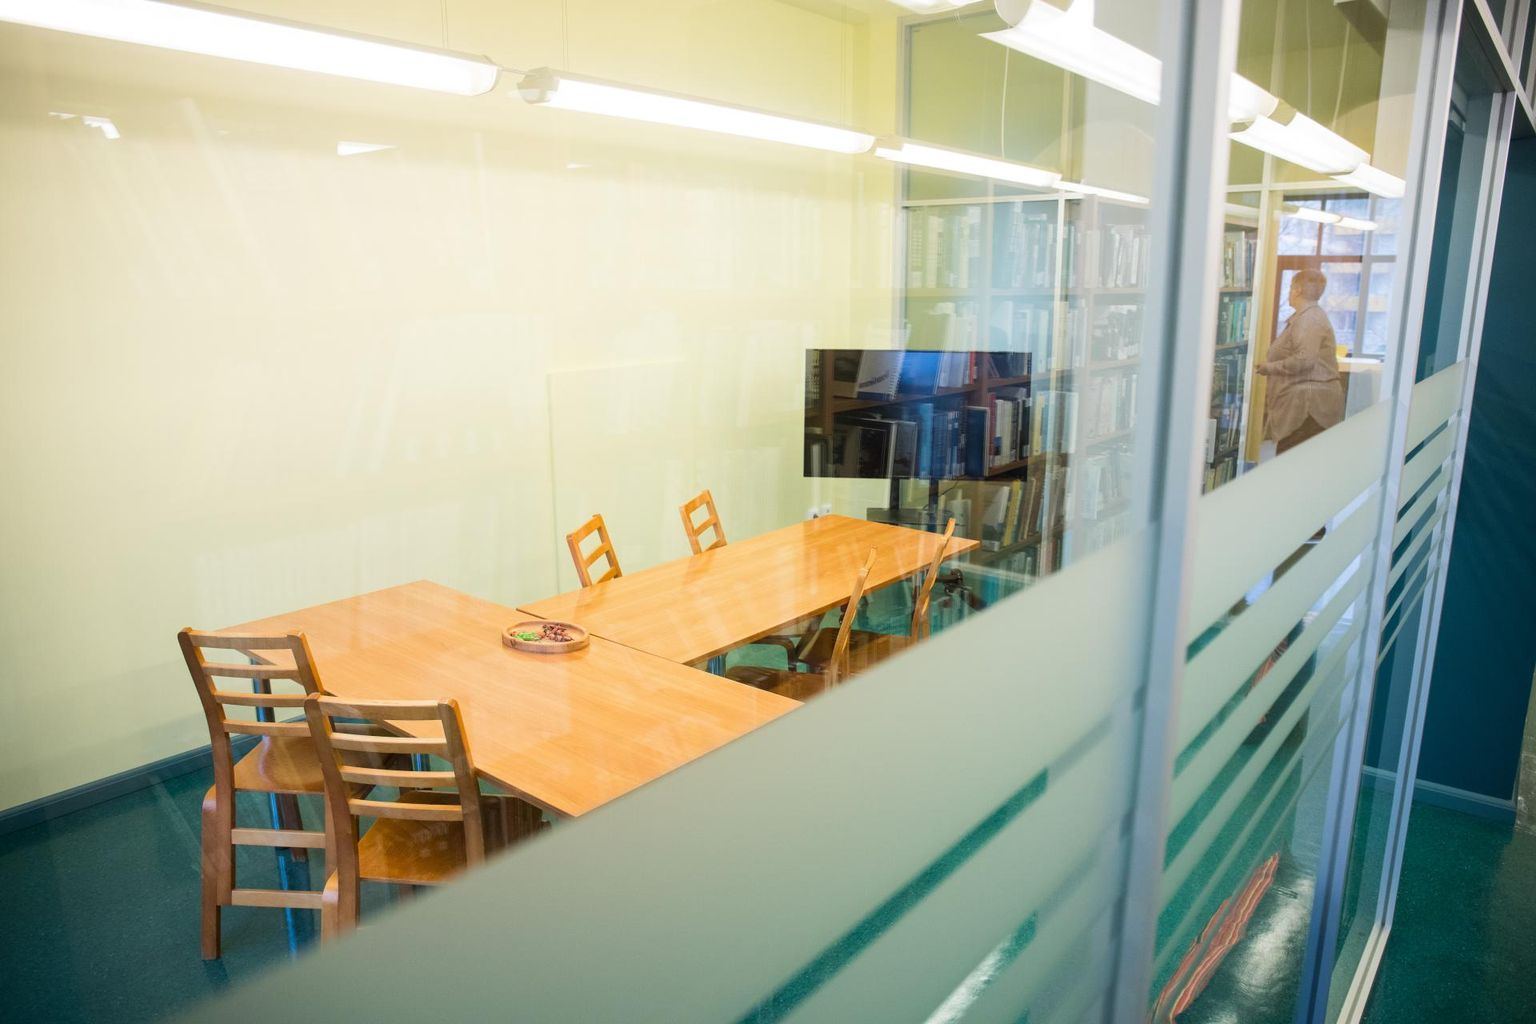 Lääne-Virumaa Keskraamatukogu teisel korrusel saab kasutada nüüd ka rühmatöö ruumi koosolekuteks, koolitusteks või mistahes muudeks koosviibimisteks.